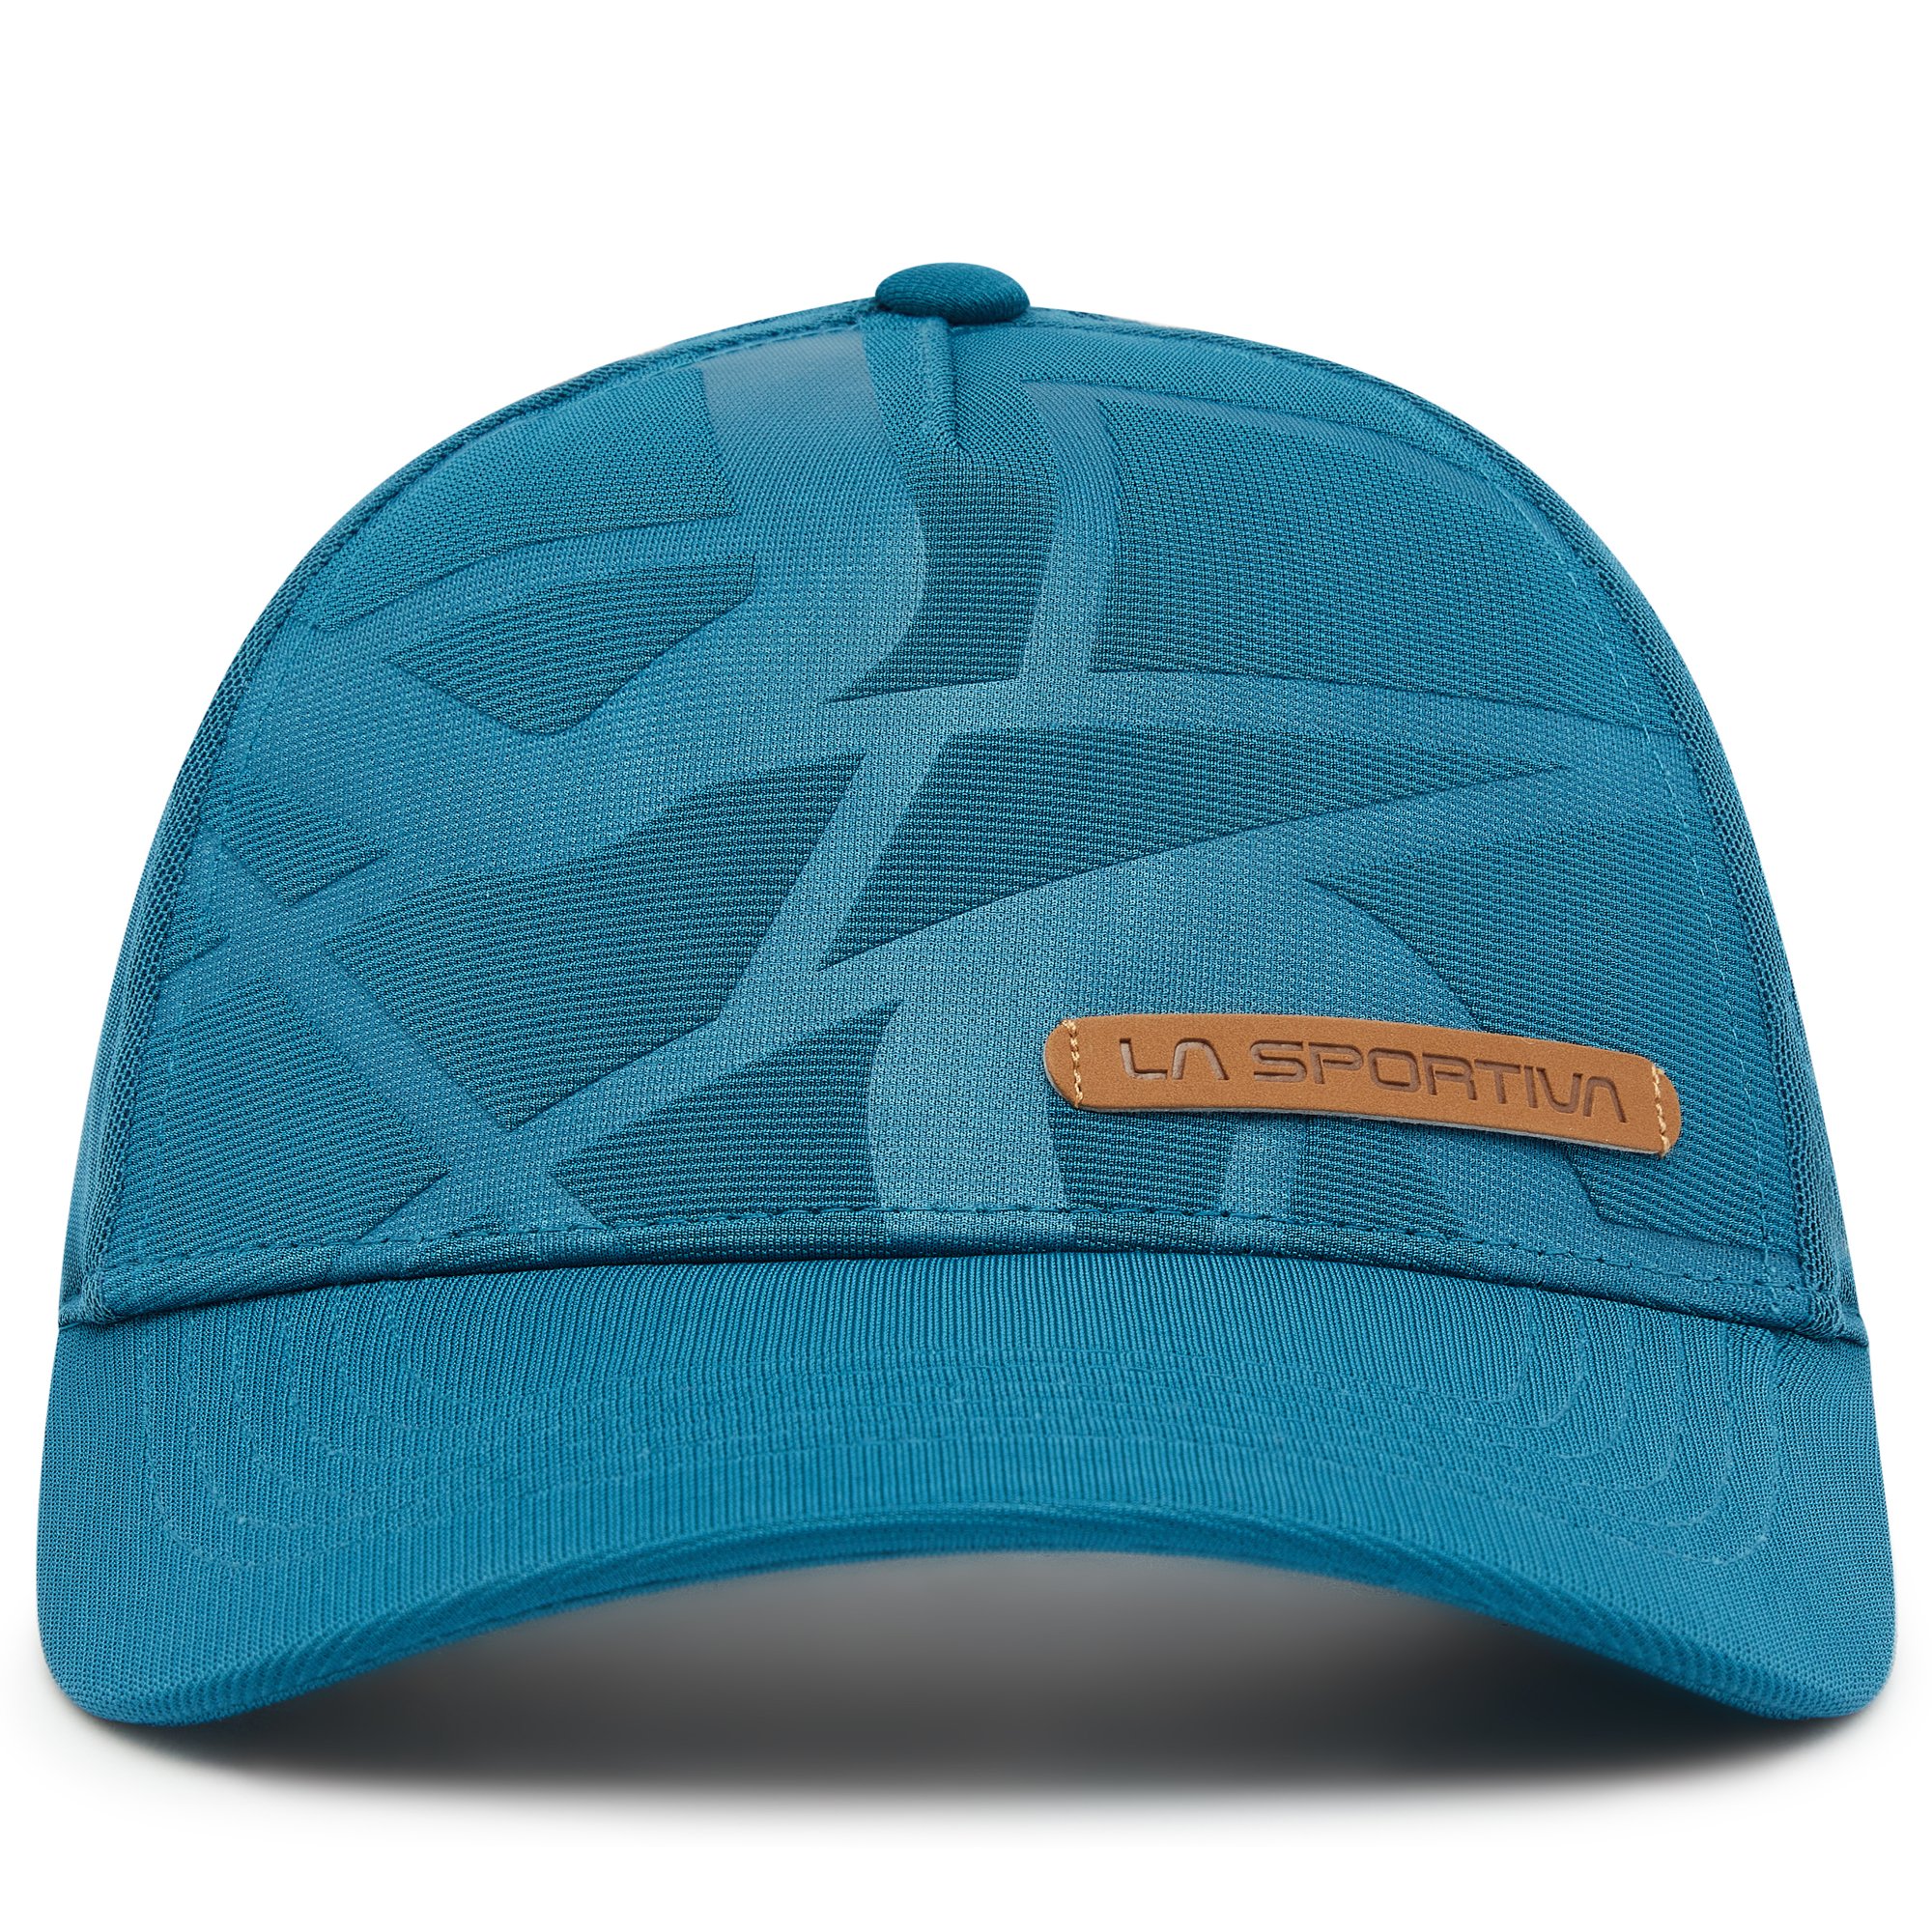 La Sportiva Skwama Trucker Hat Space Blue